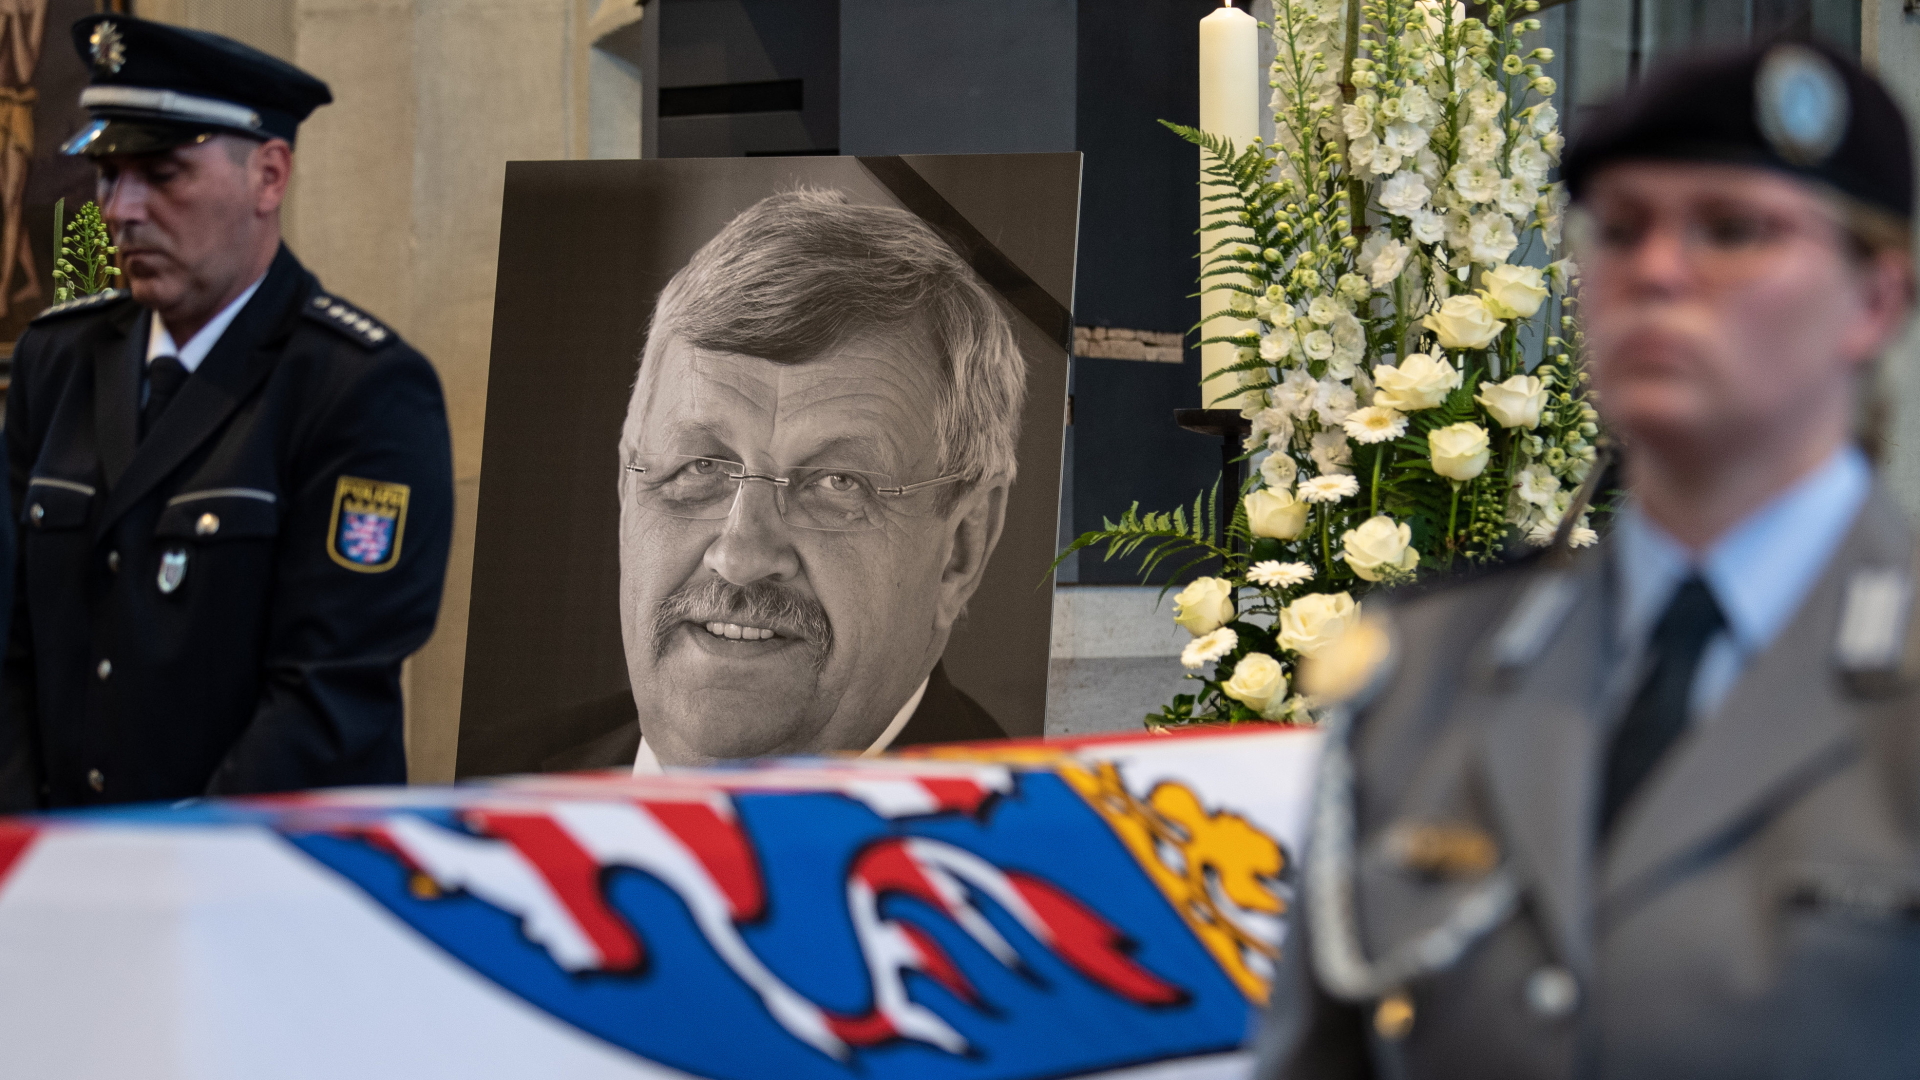 Ein Foto des ermordeten Kasseler Regierungspräsidenten Lübcke bei der Trauerfeier im Juni 2019.